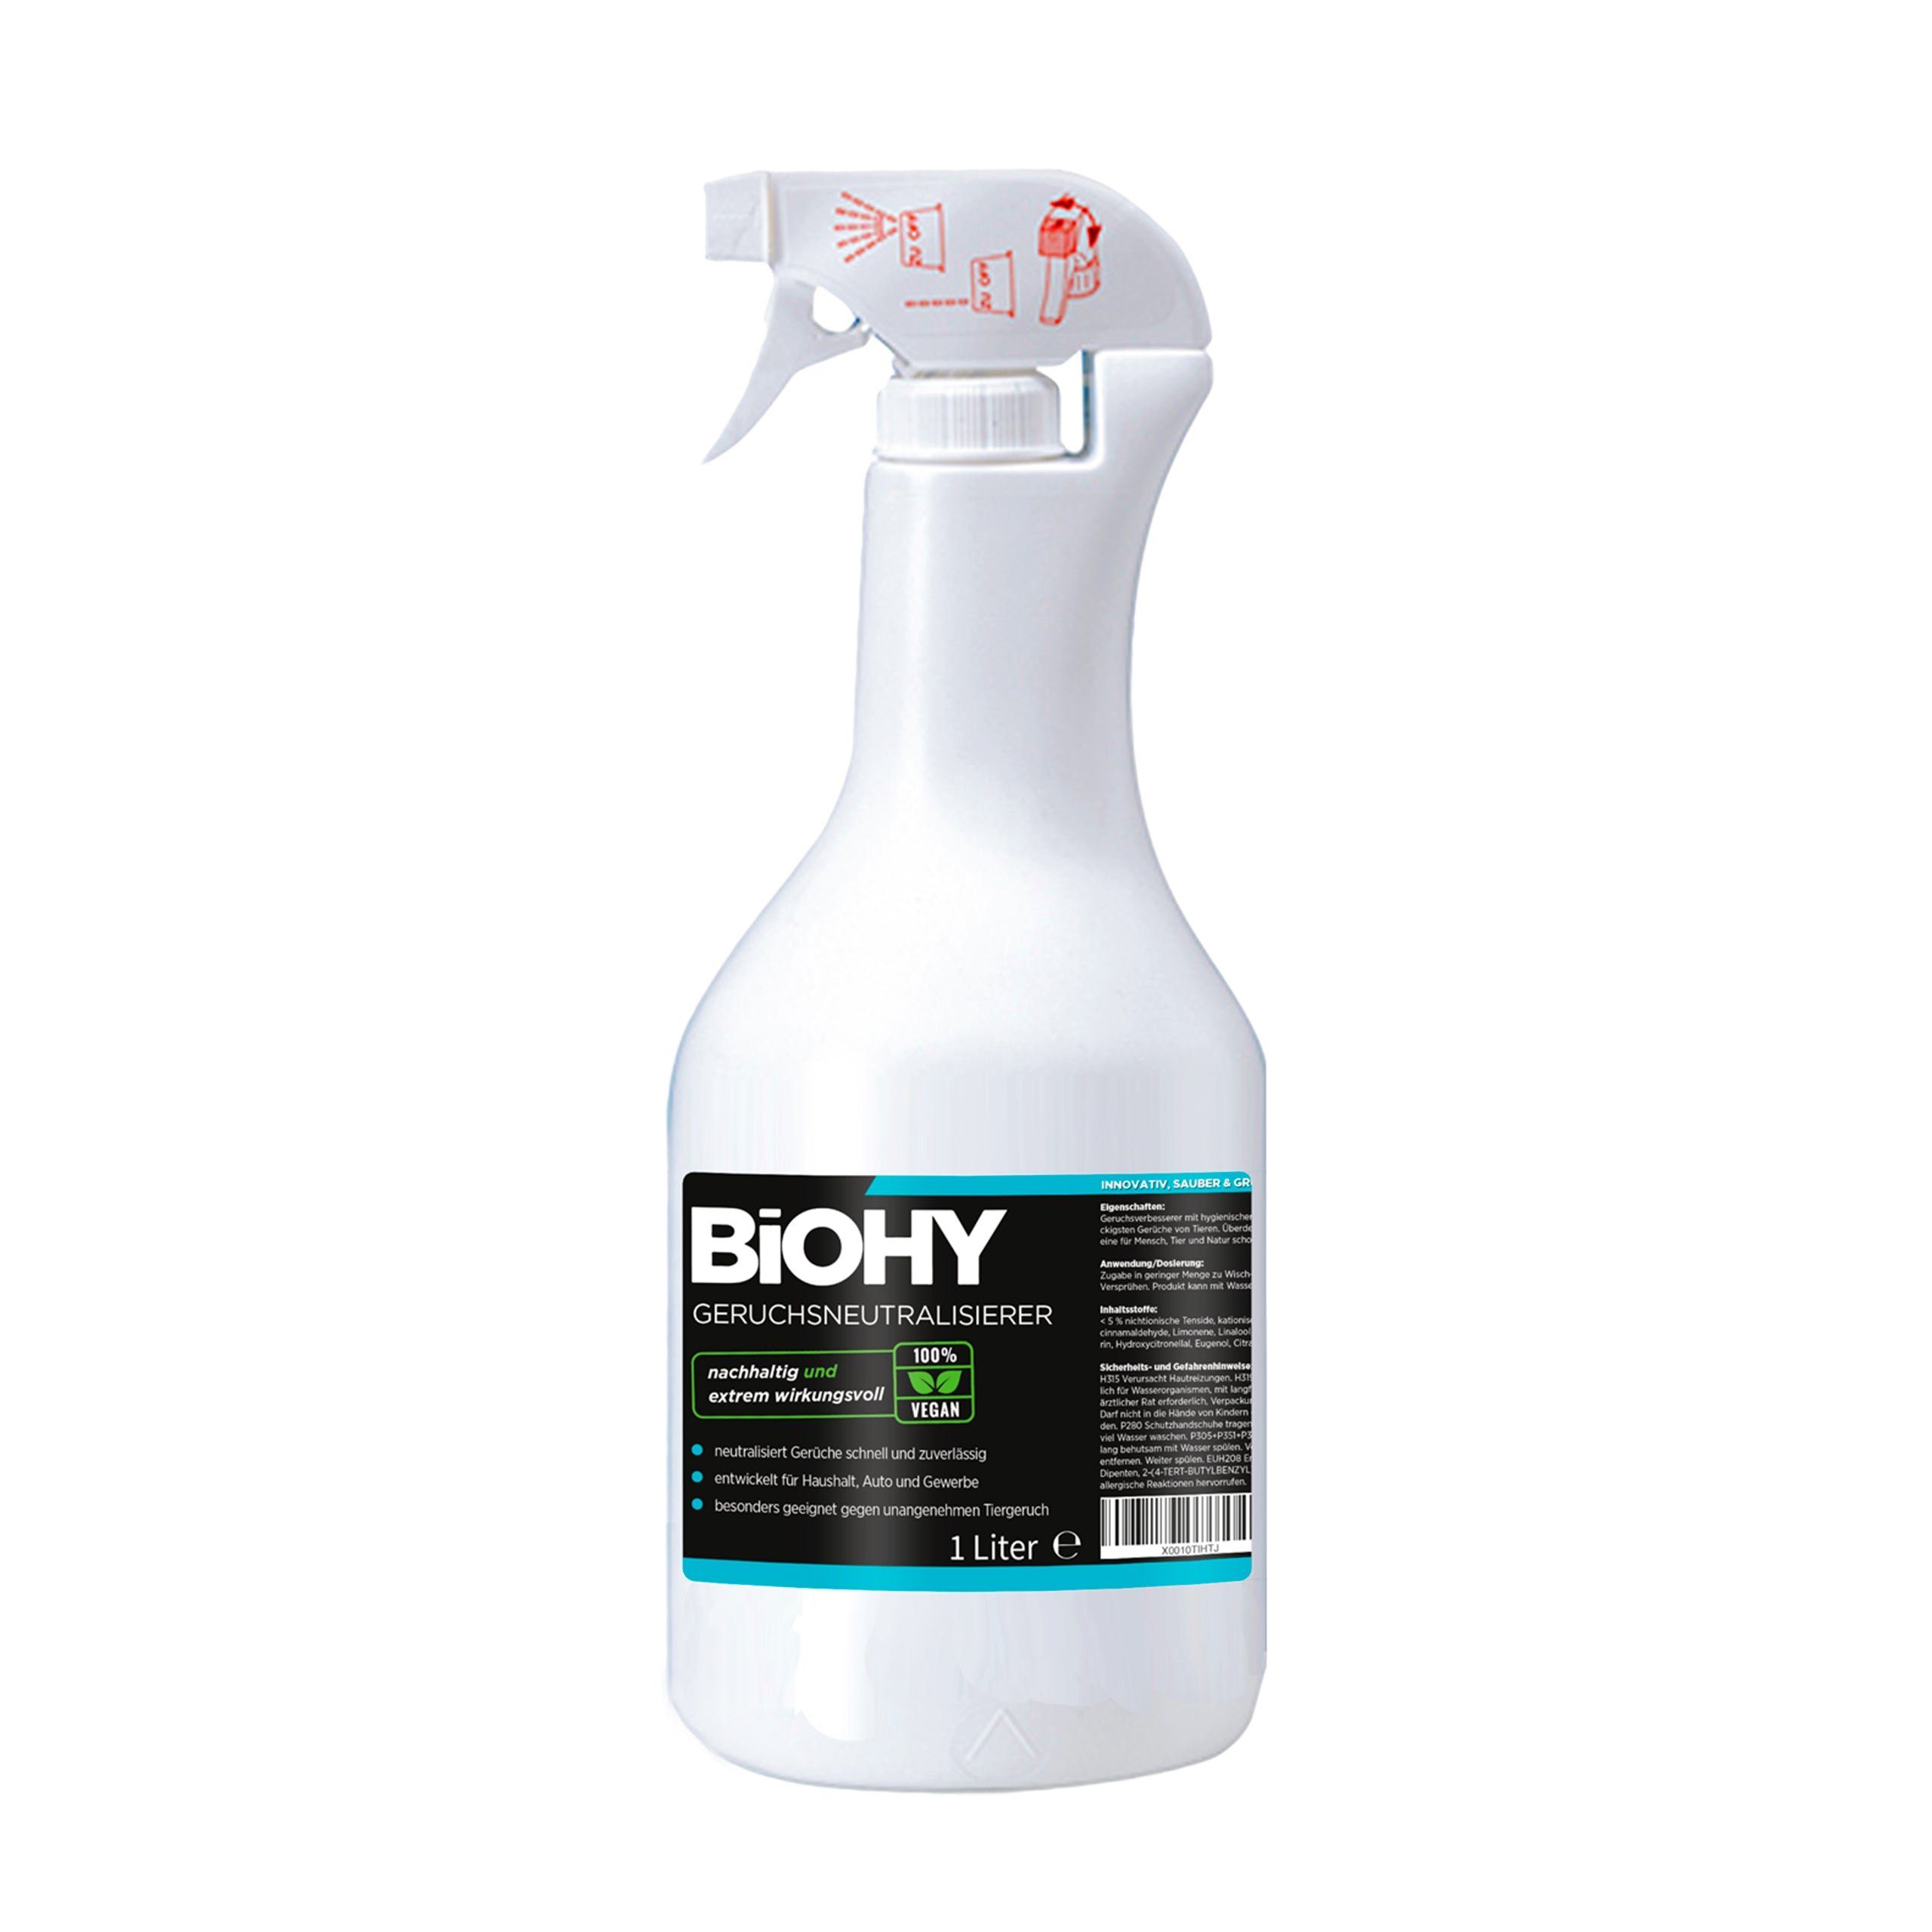 BiOHY Geruchsentferner Geruchsneutralisierer 1 x 1 Liter Flasche (1-St)